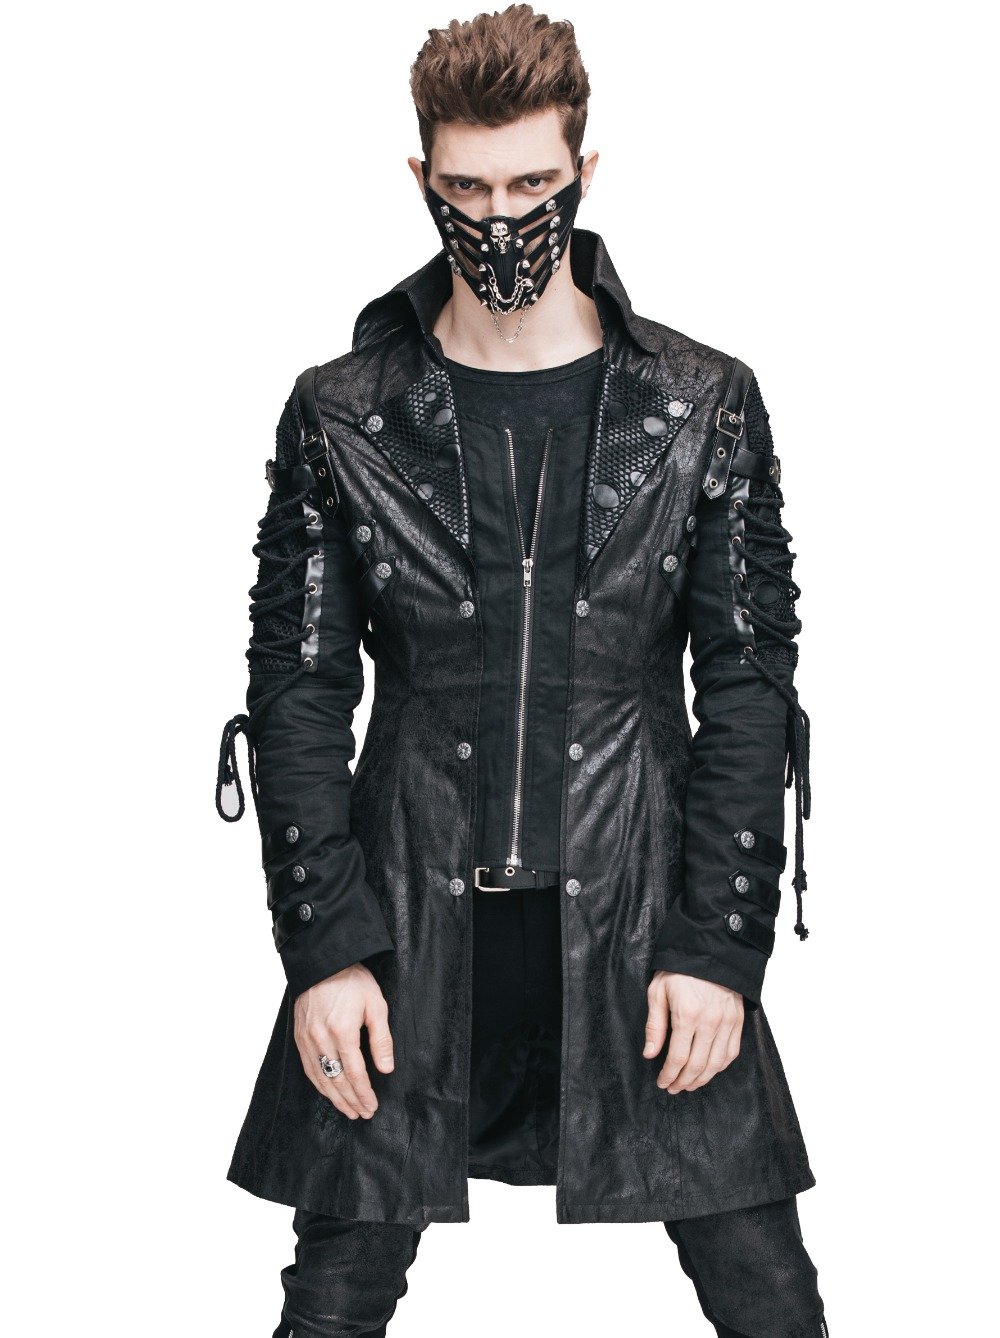 одежда cyberpunk мужская фото 2